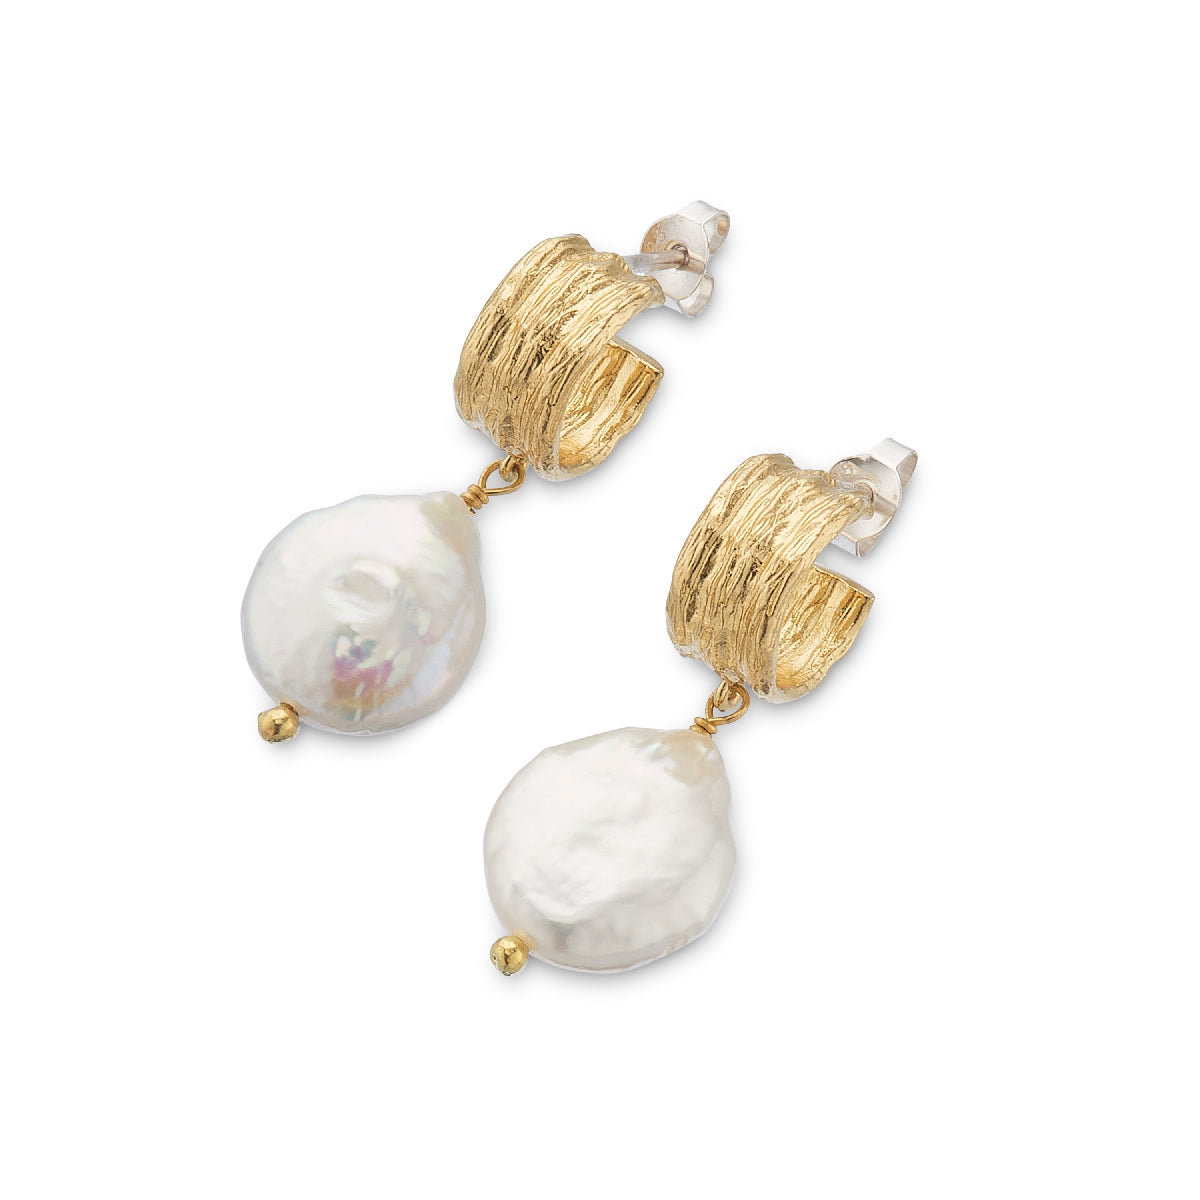 Wide hoop and baroque pearl earrings